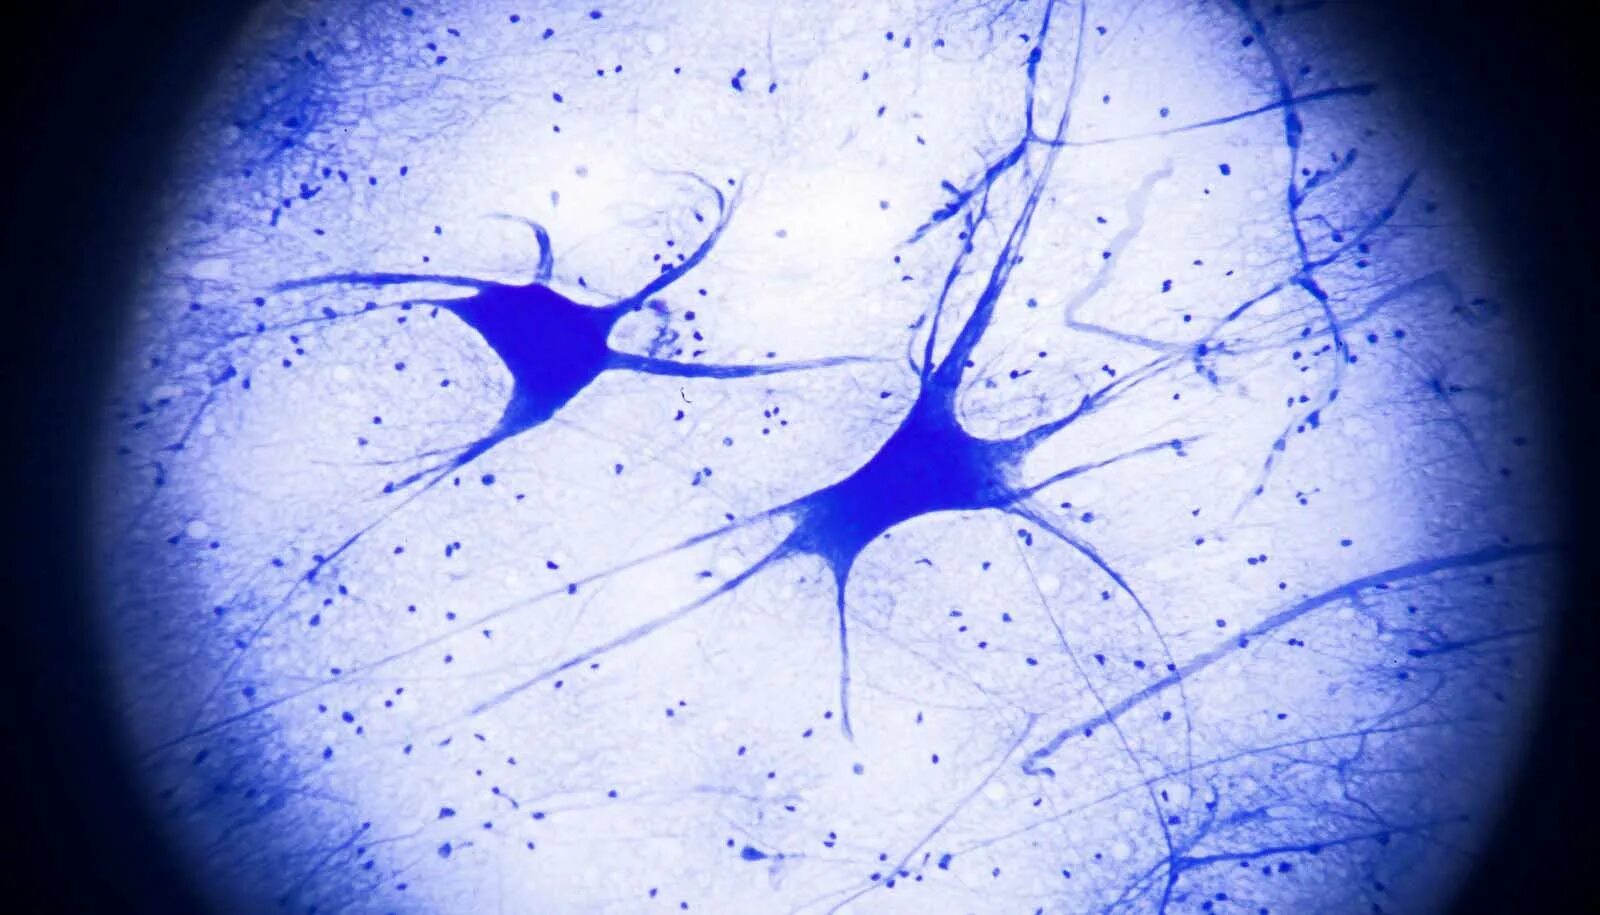 Нейрон гистология препарат. Нейрон микрофотография гистология. Клетки нейронов гистология. Нервные клетки под микроскопом гистология. Умершие клетки мозга